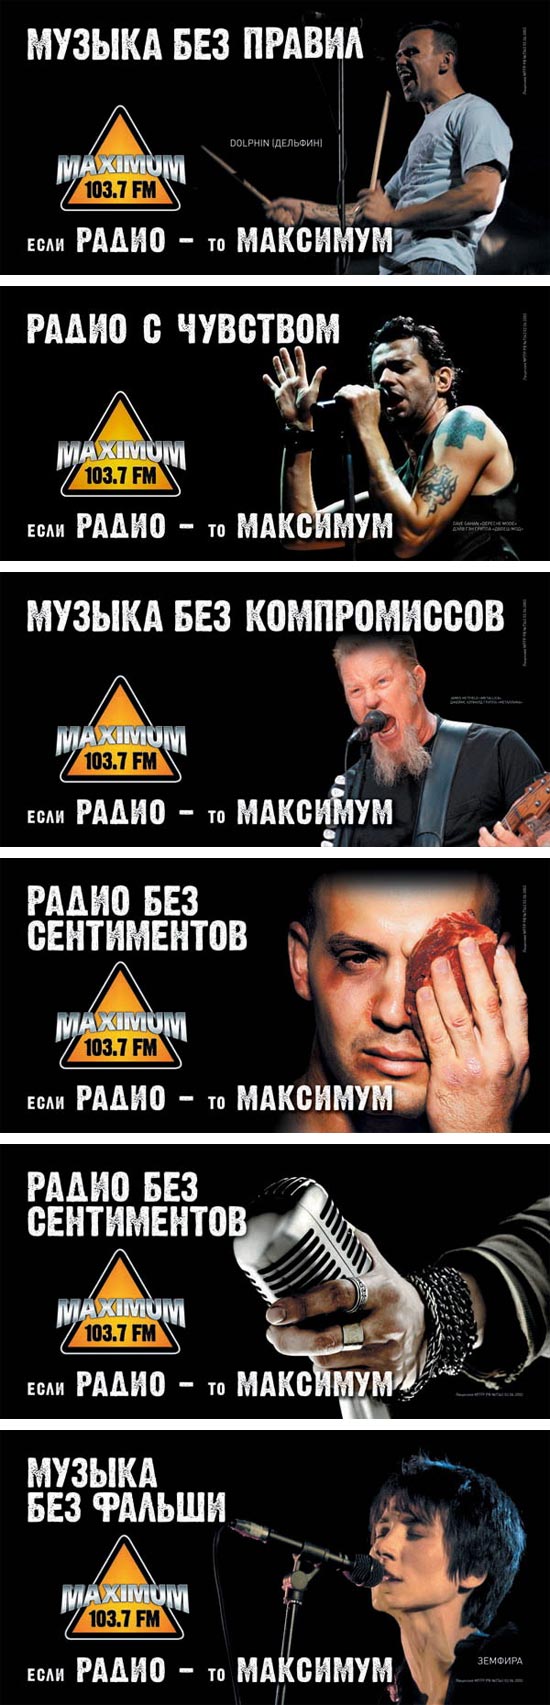 У Радио MAXIMUM новый логотип и рекламная кампания «Без компромиссов»